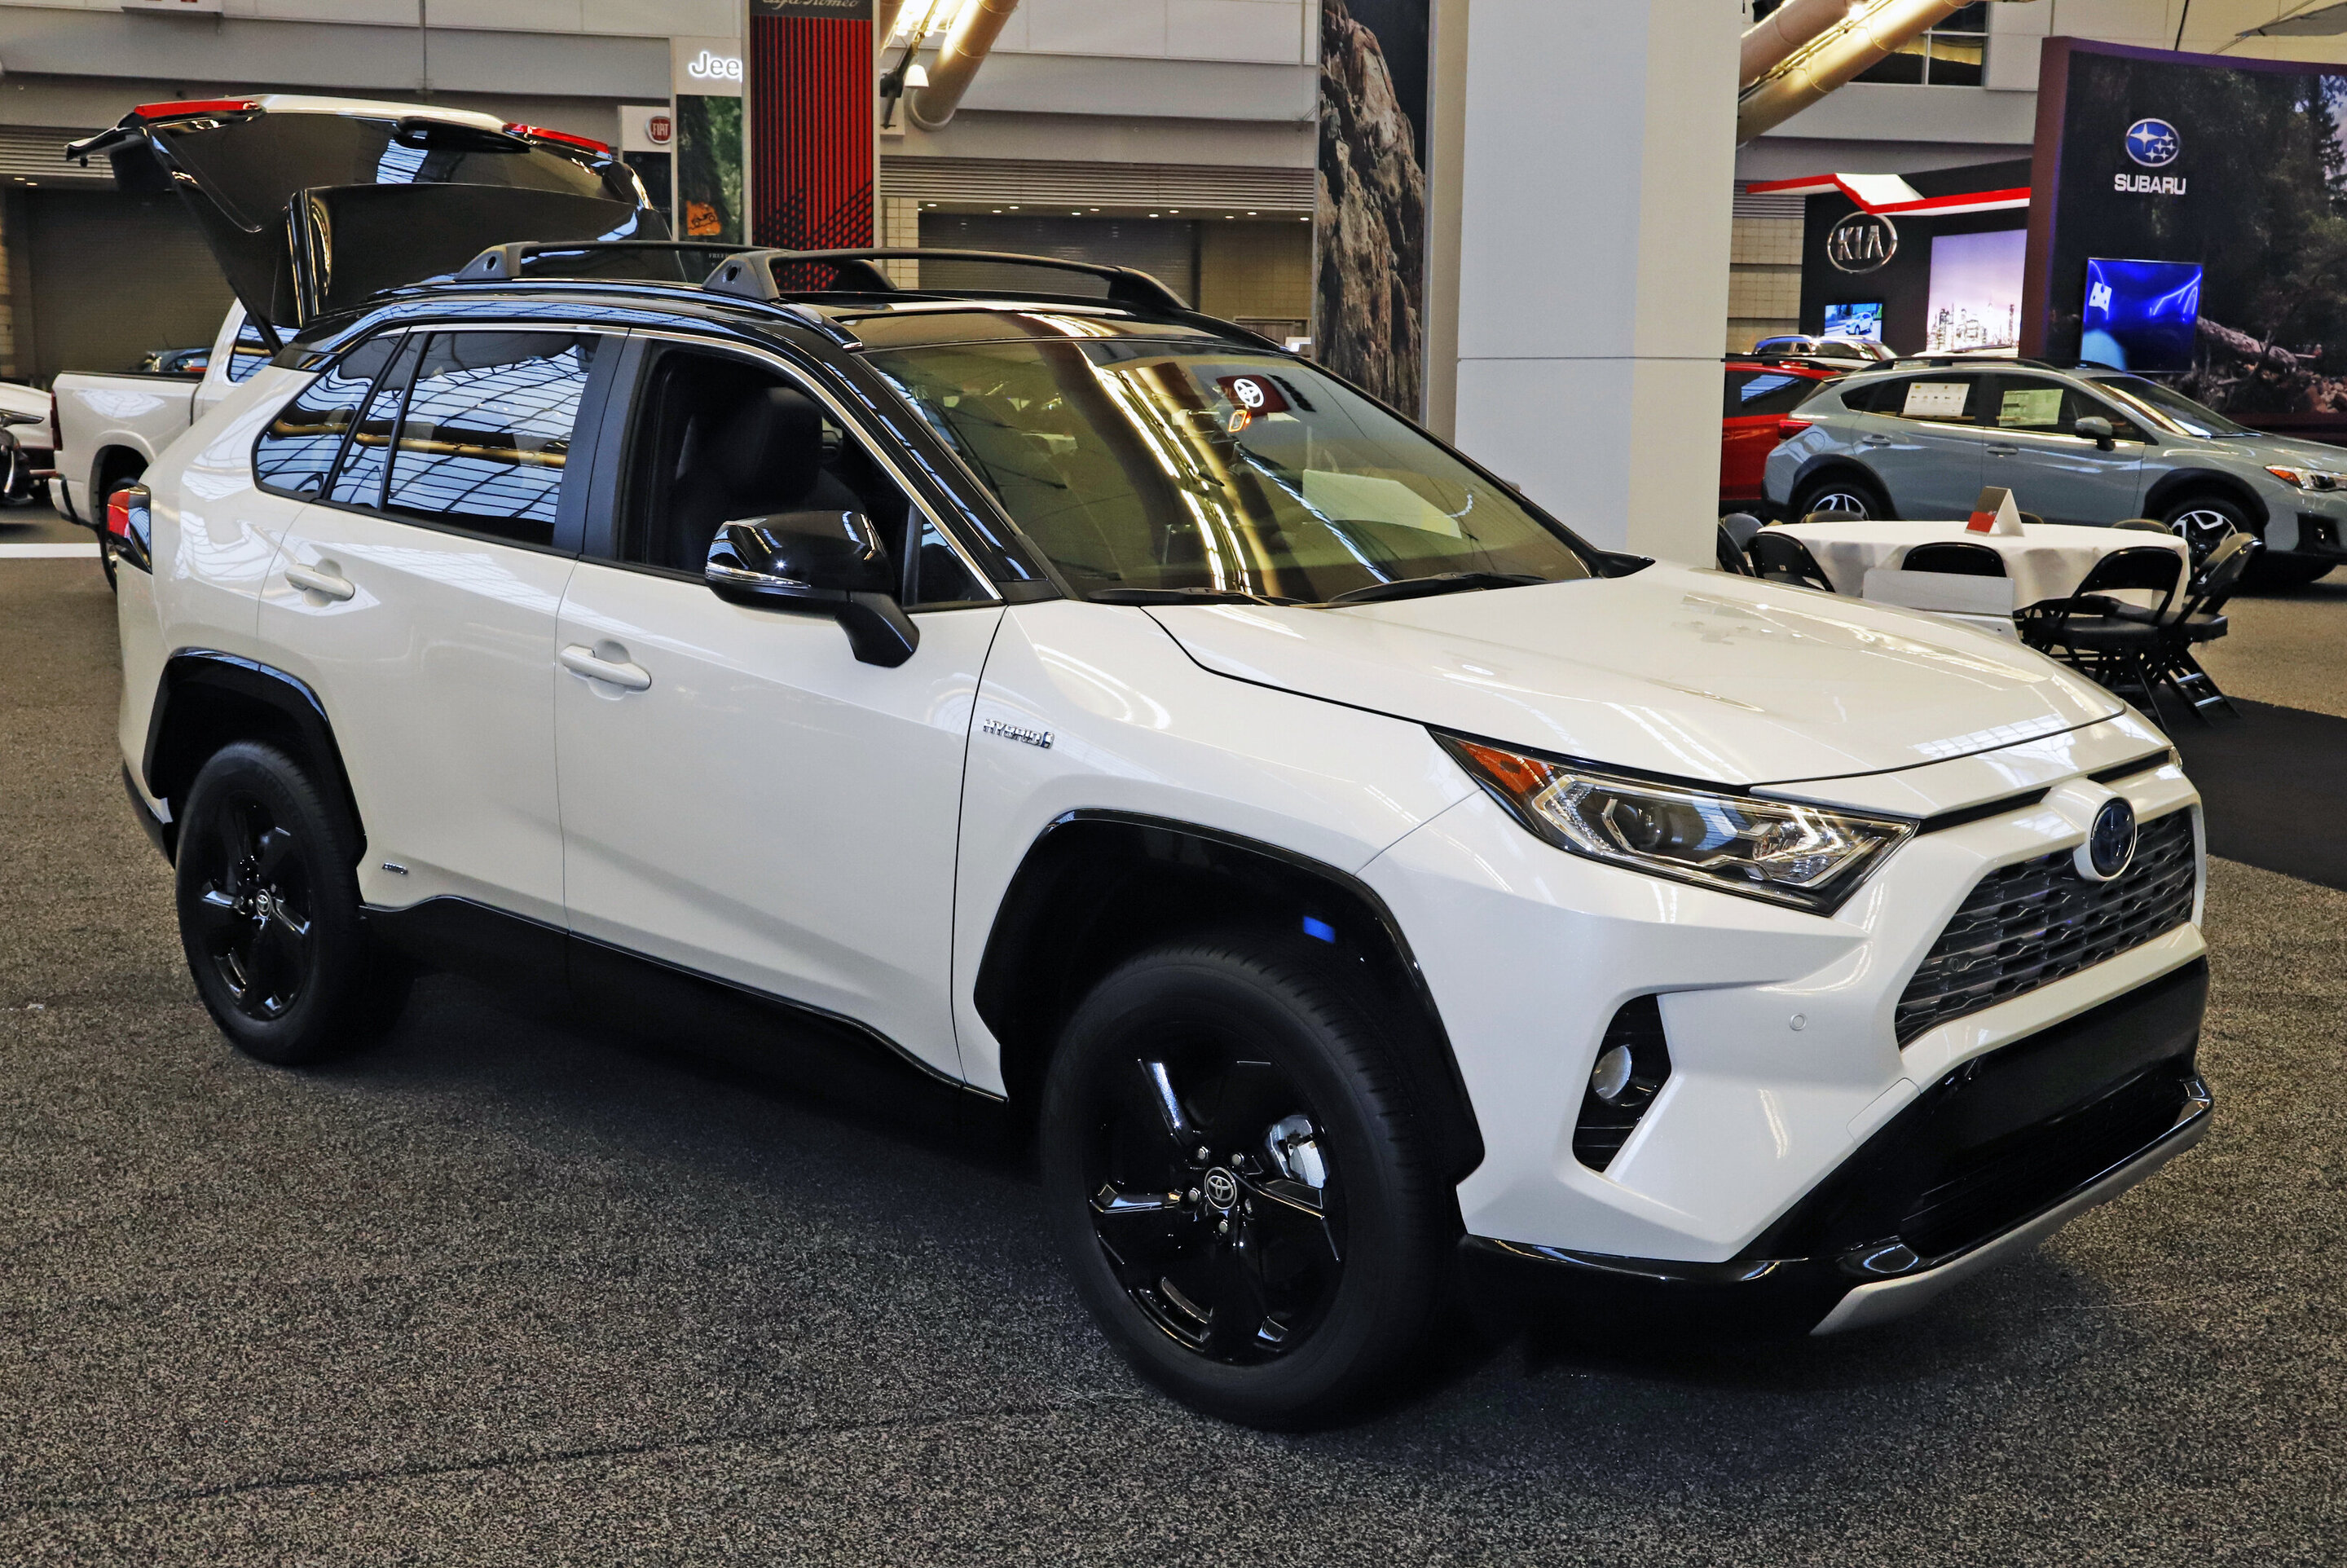 Edmunds compares 2020 Honda CRV and Toyota RAV4 hybrids